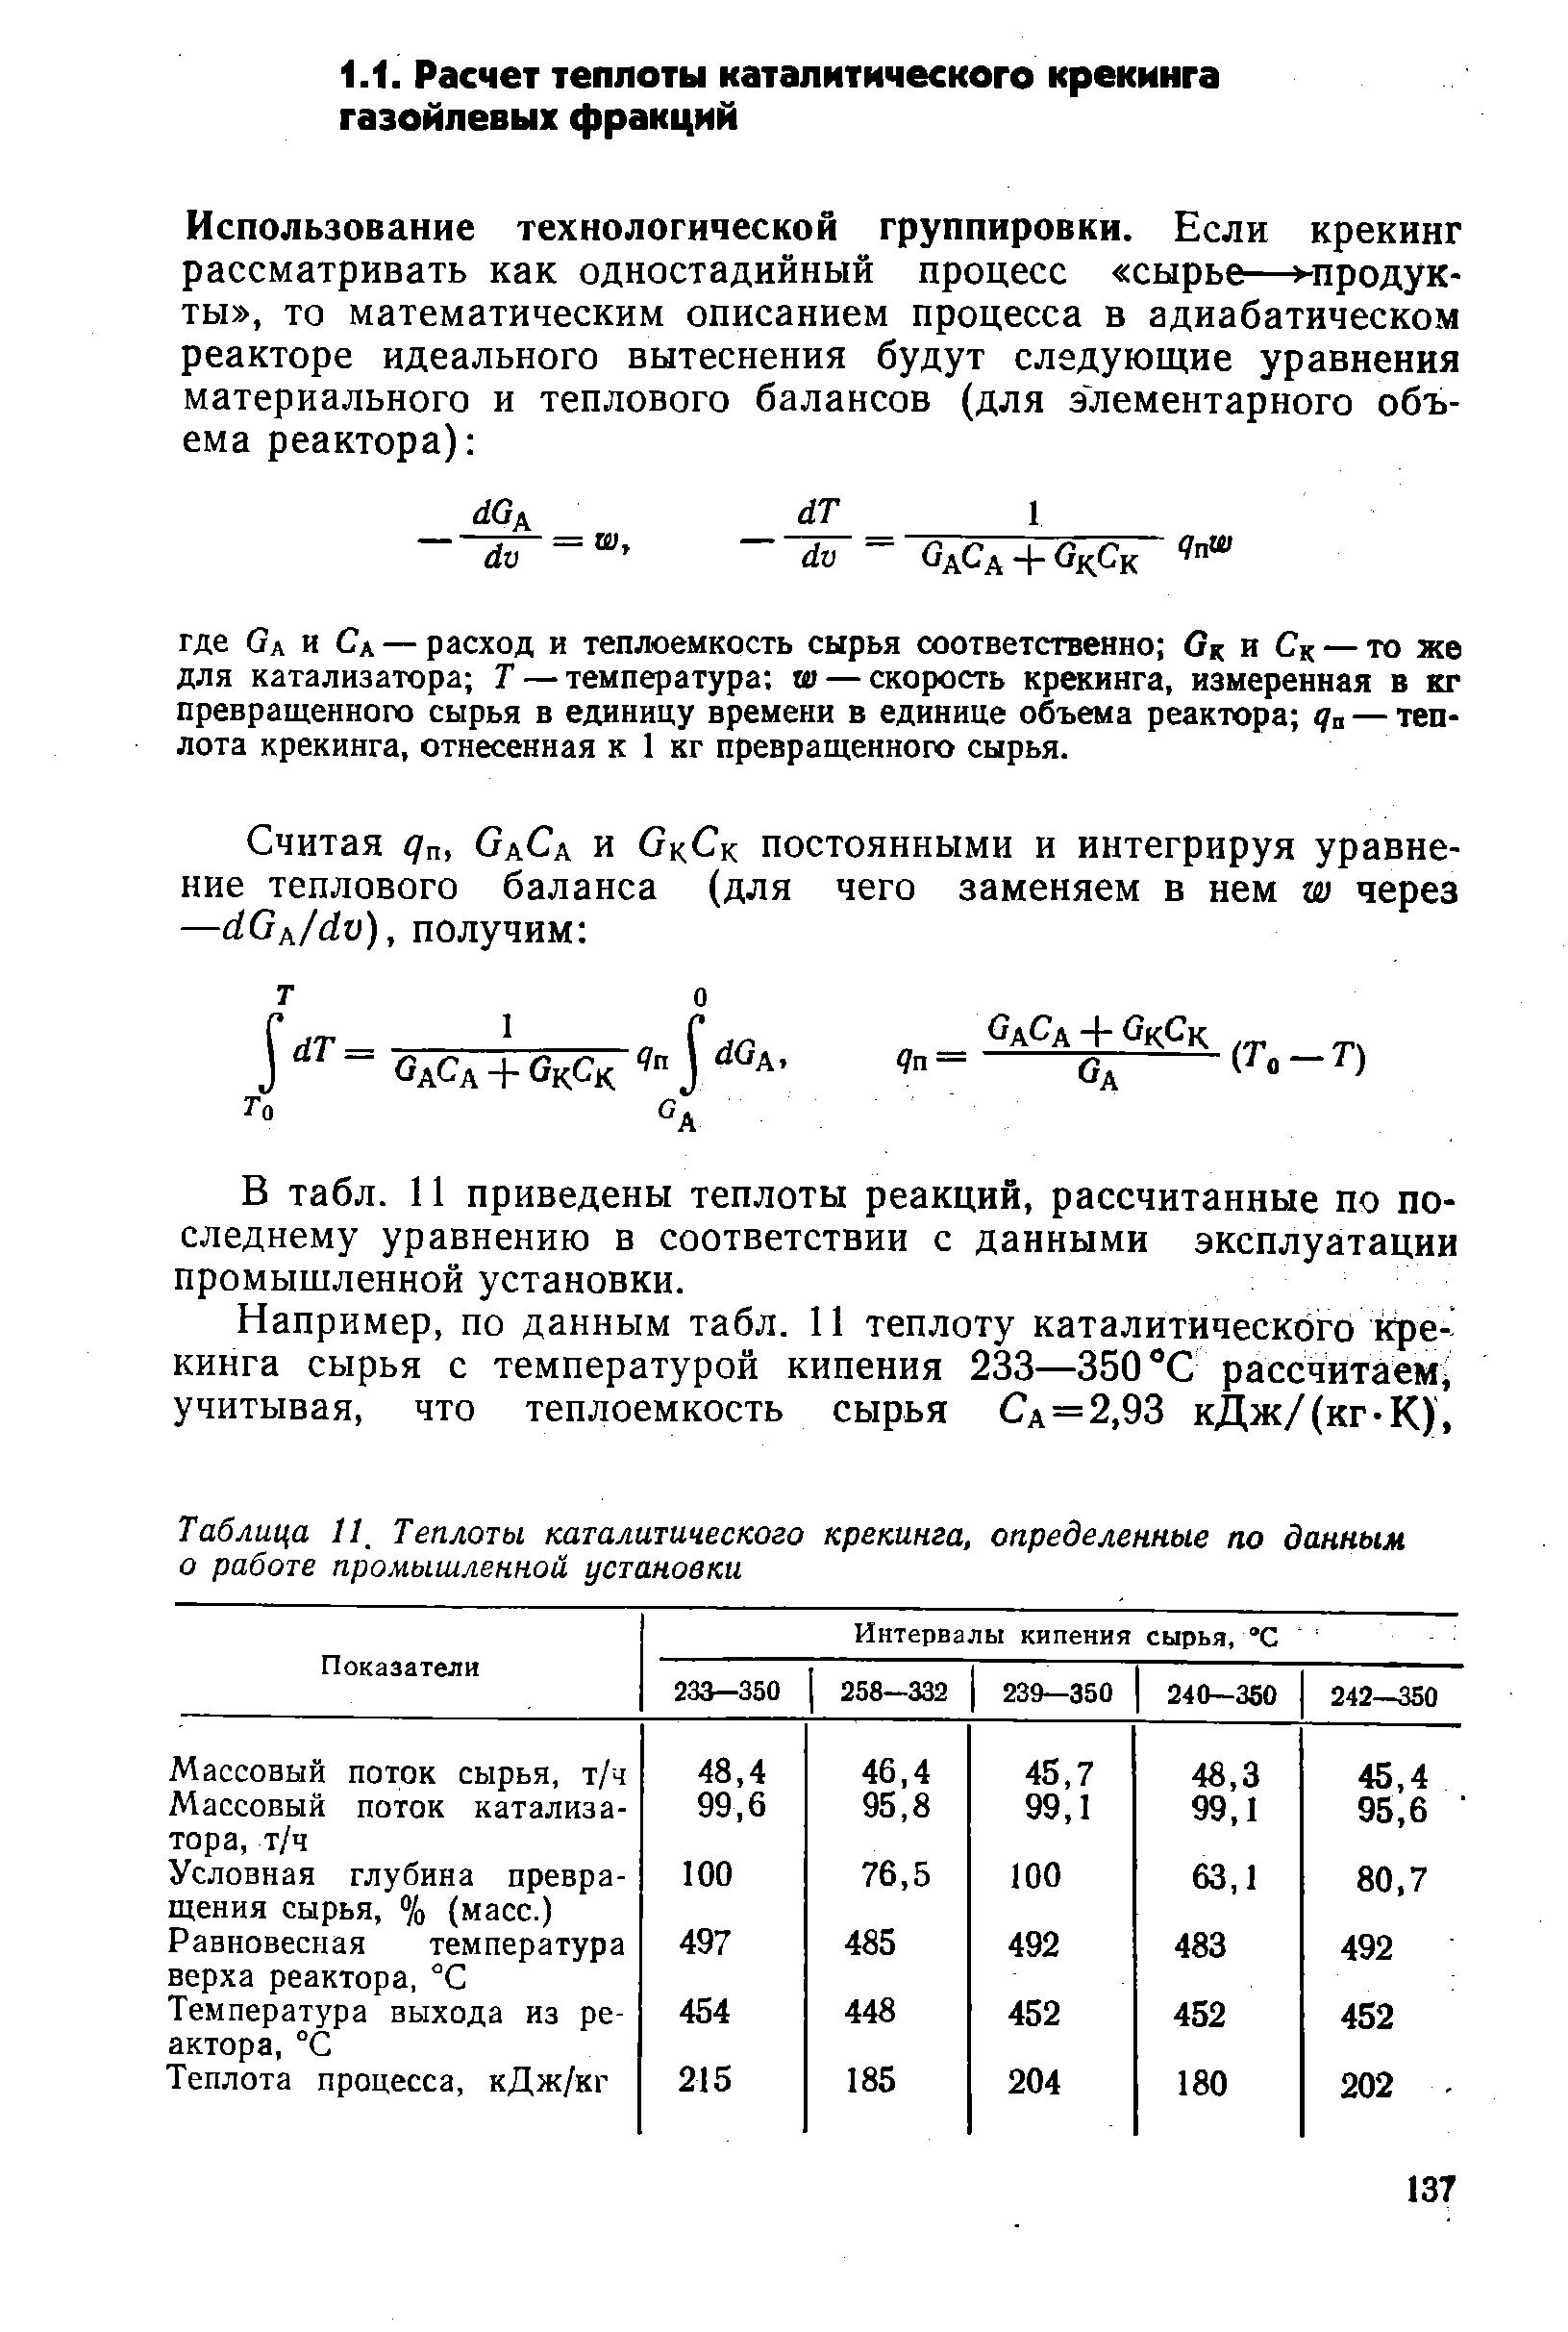 В табл. 11 приведены теплоты реакций, рассчитанные по последнему уравнению в соответствии с данными эксплуатации промышленной установки.